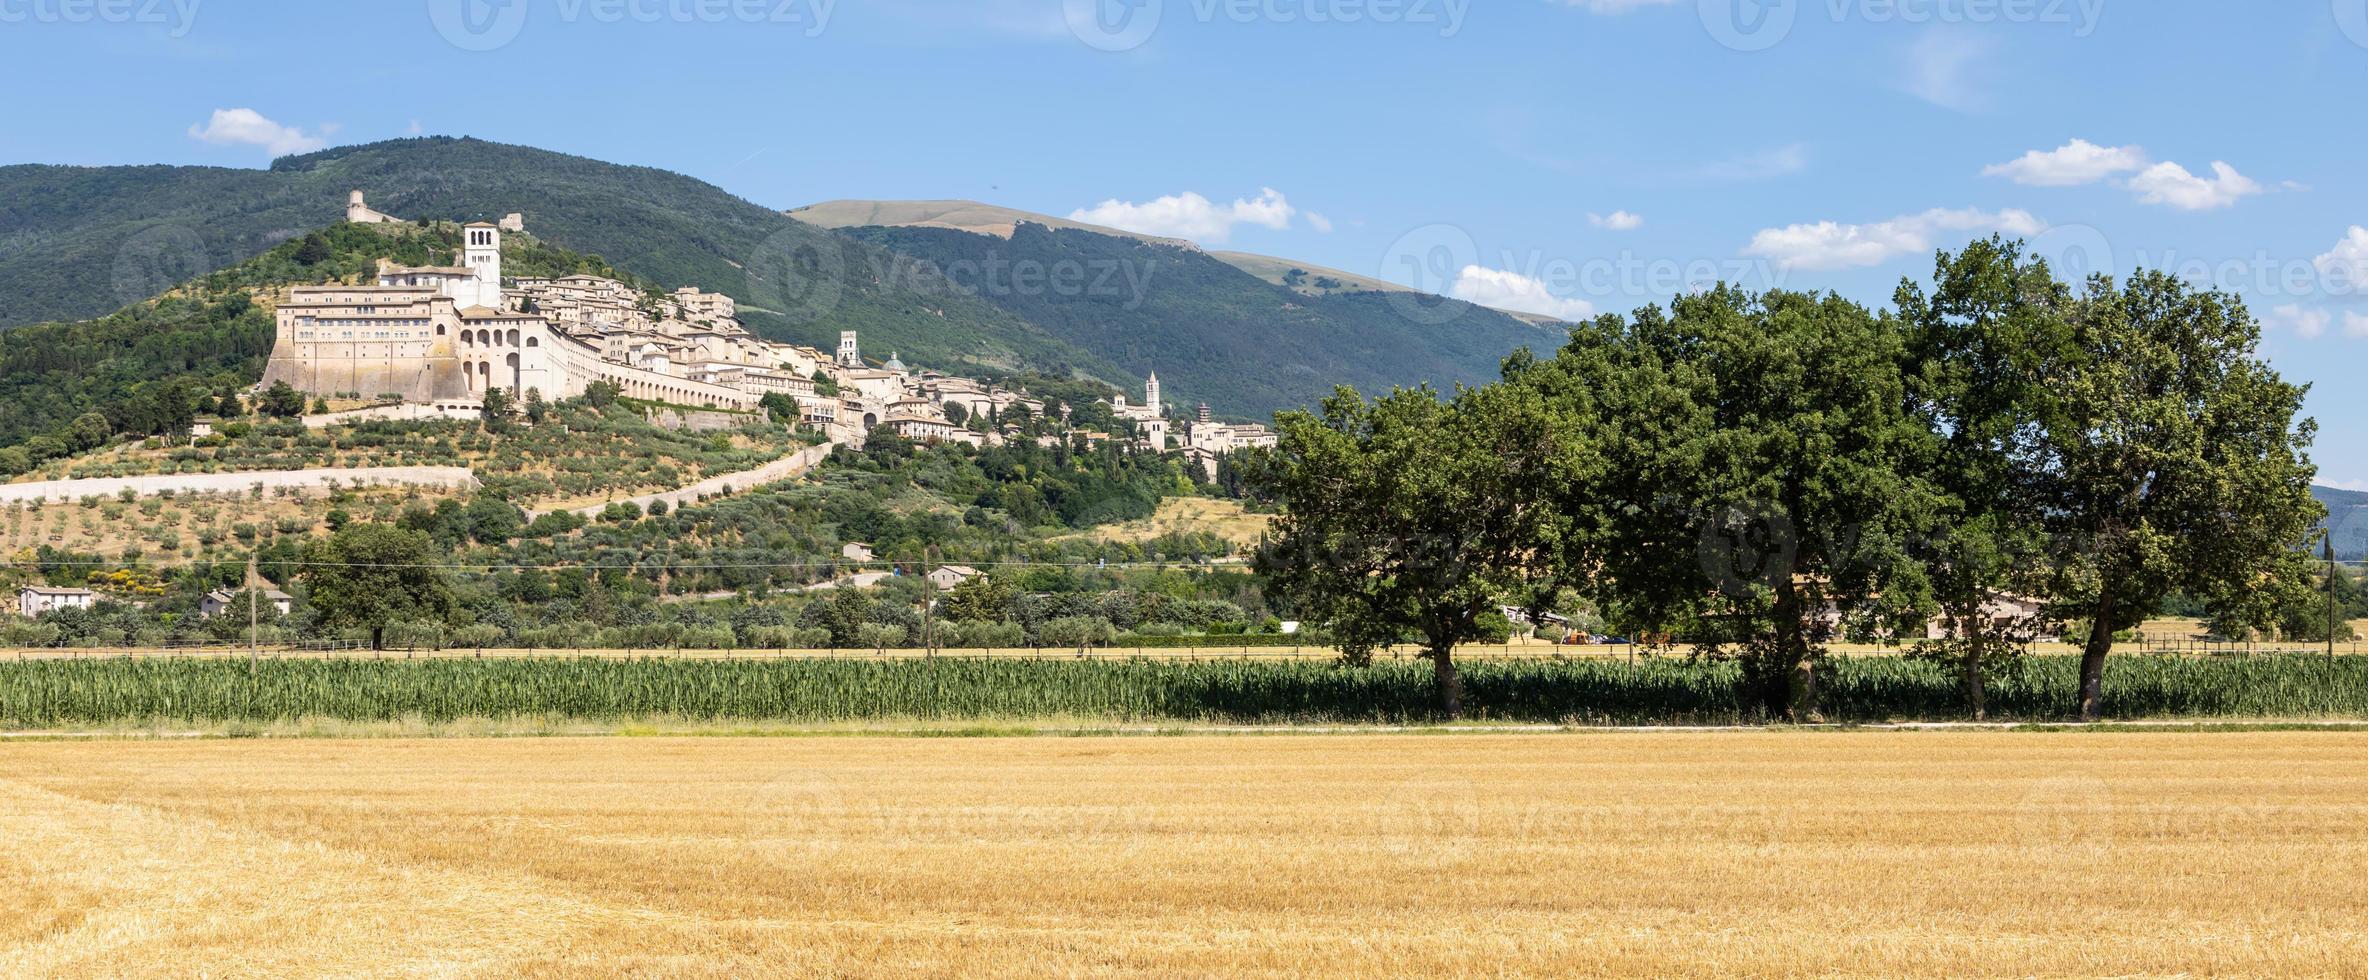 vila de Assis na região de umbria, itália. foto